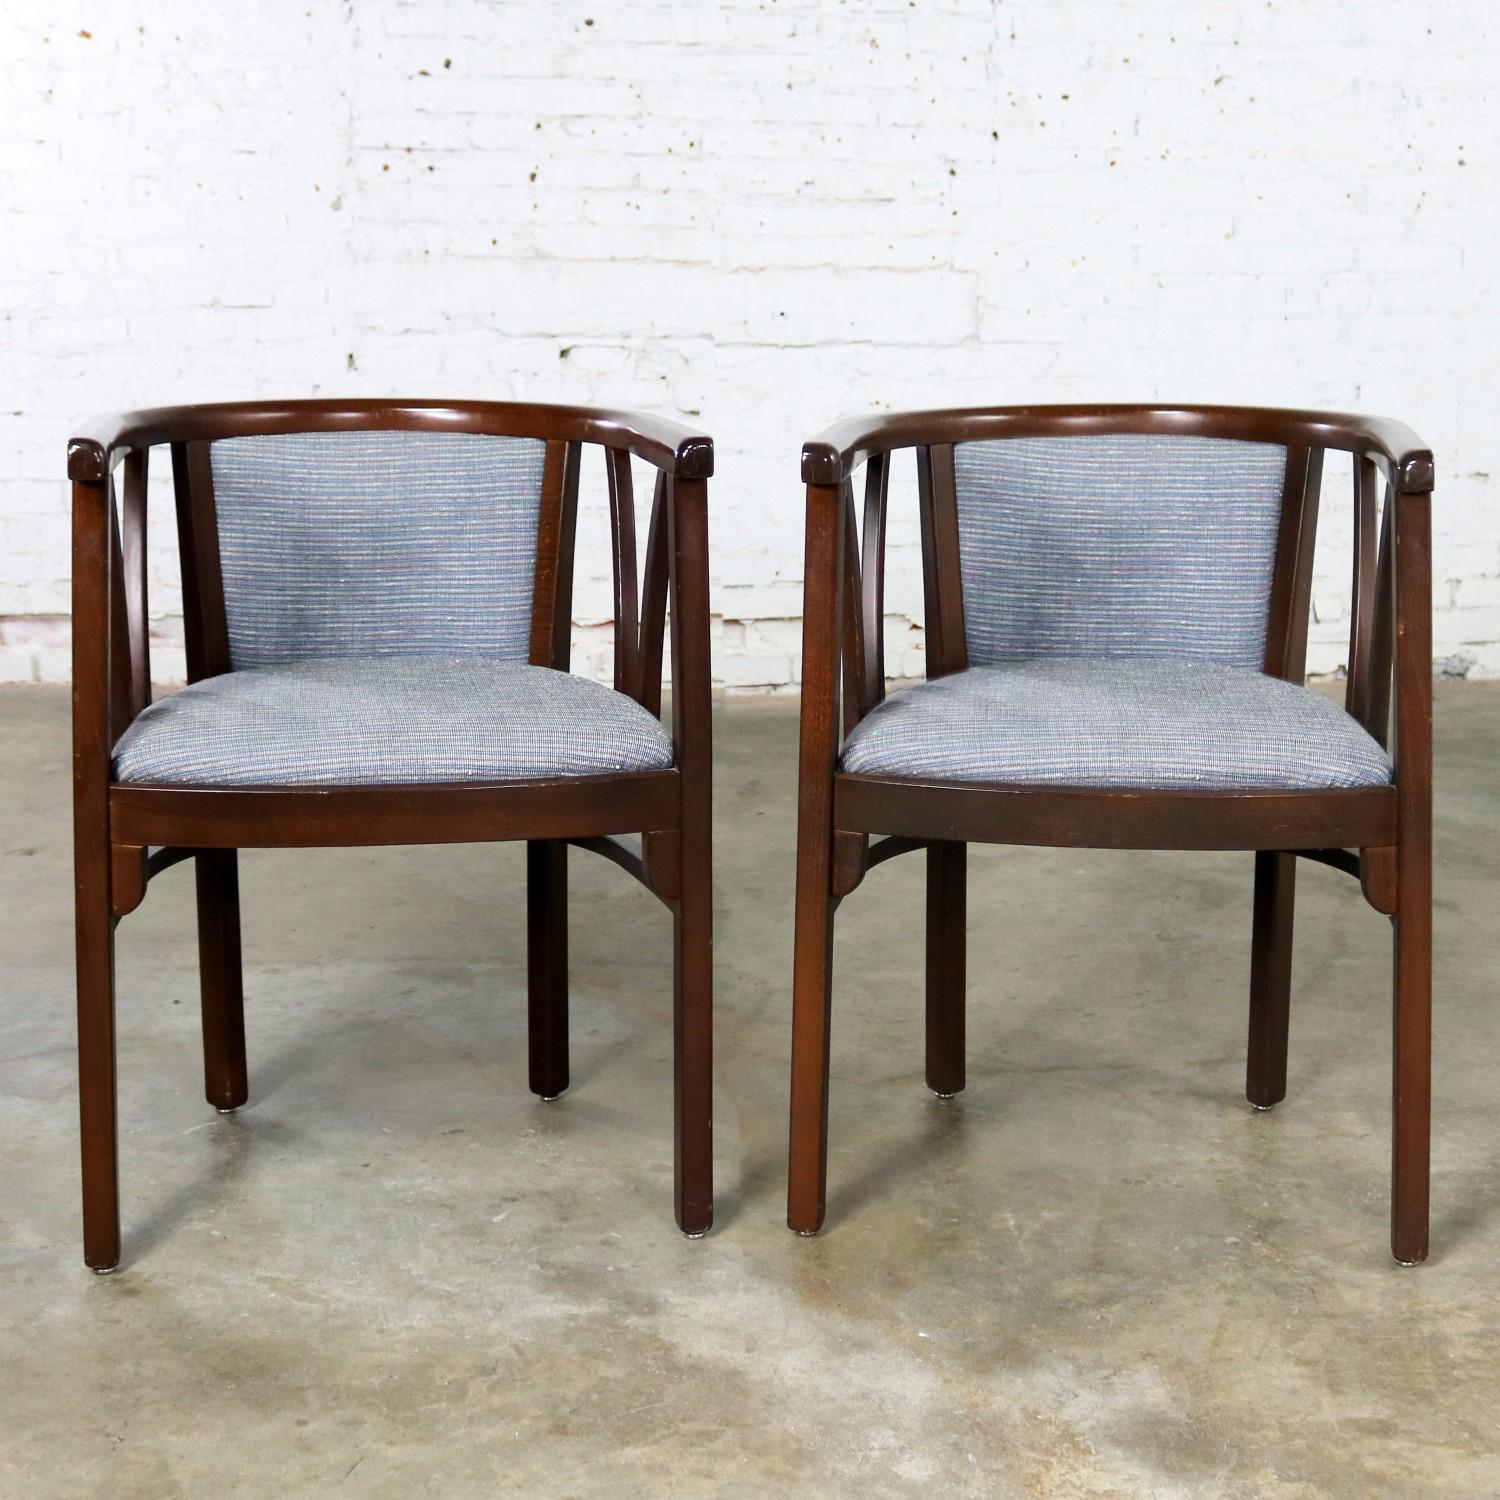 Belle paire de chaises latérales de bistrot de style Bauhaus ou Art Déco avec dossier plat et accoudoirs par Loewenstein-Oggo. Ils sont dans un merveilleux état vintage. Le tissu bleu-gris est en excellent état. Le cadre en bois est en très bon